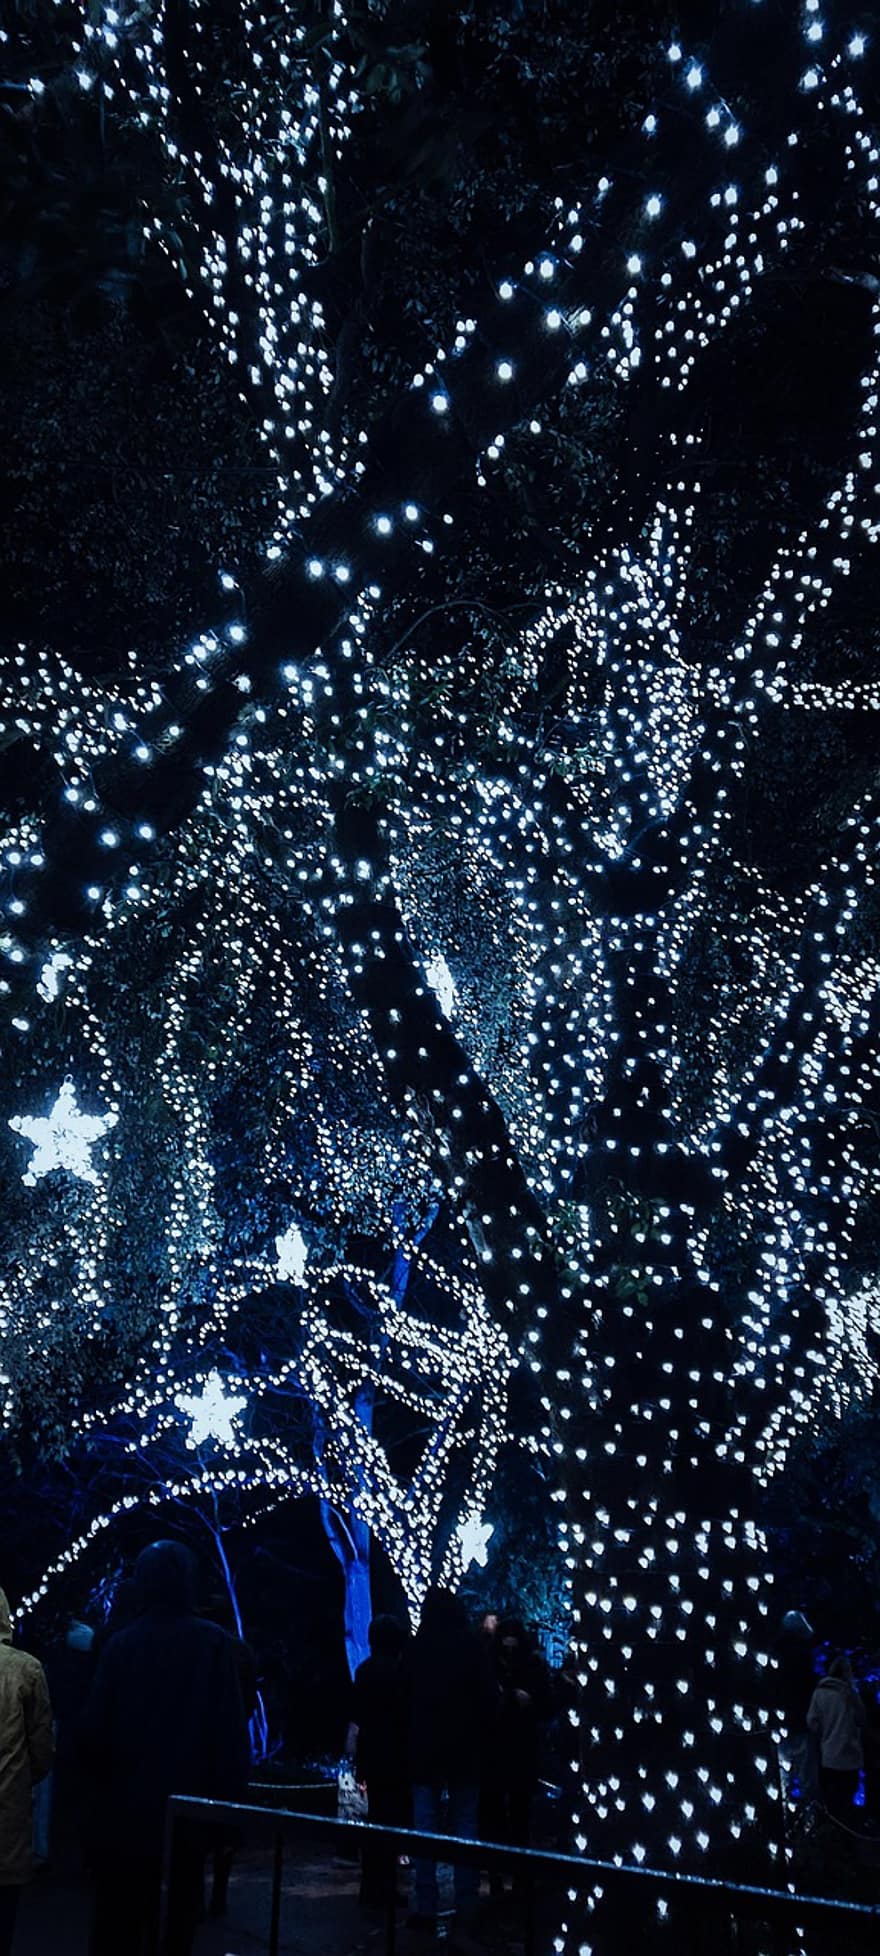 albero, luci fatate, illuminato, luci di Natale, stelle, stelle di natale, splendore, raggiante, luci incandescenti, decorazioni natalizie, notte